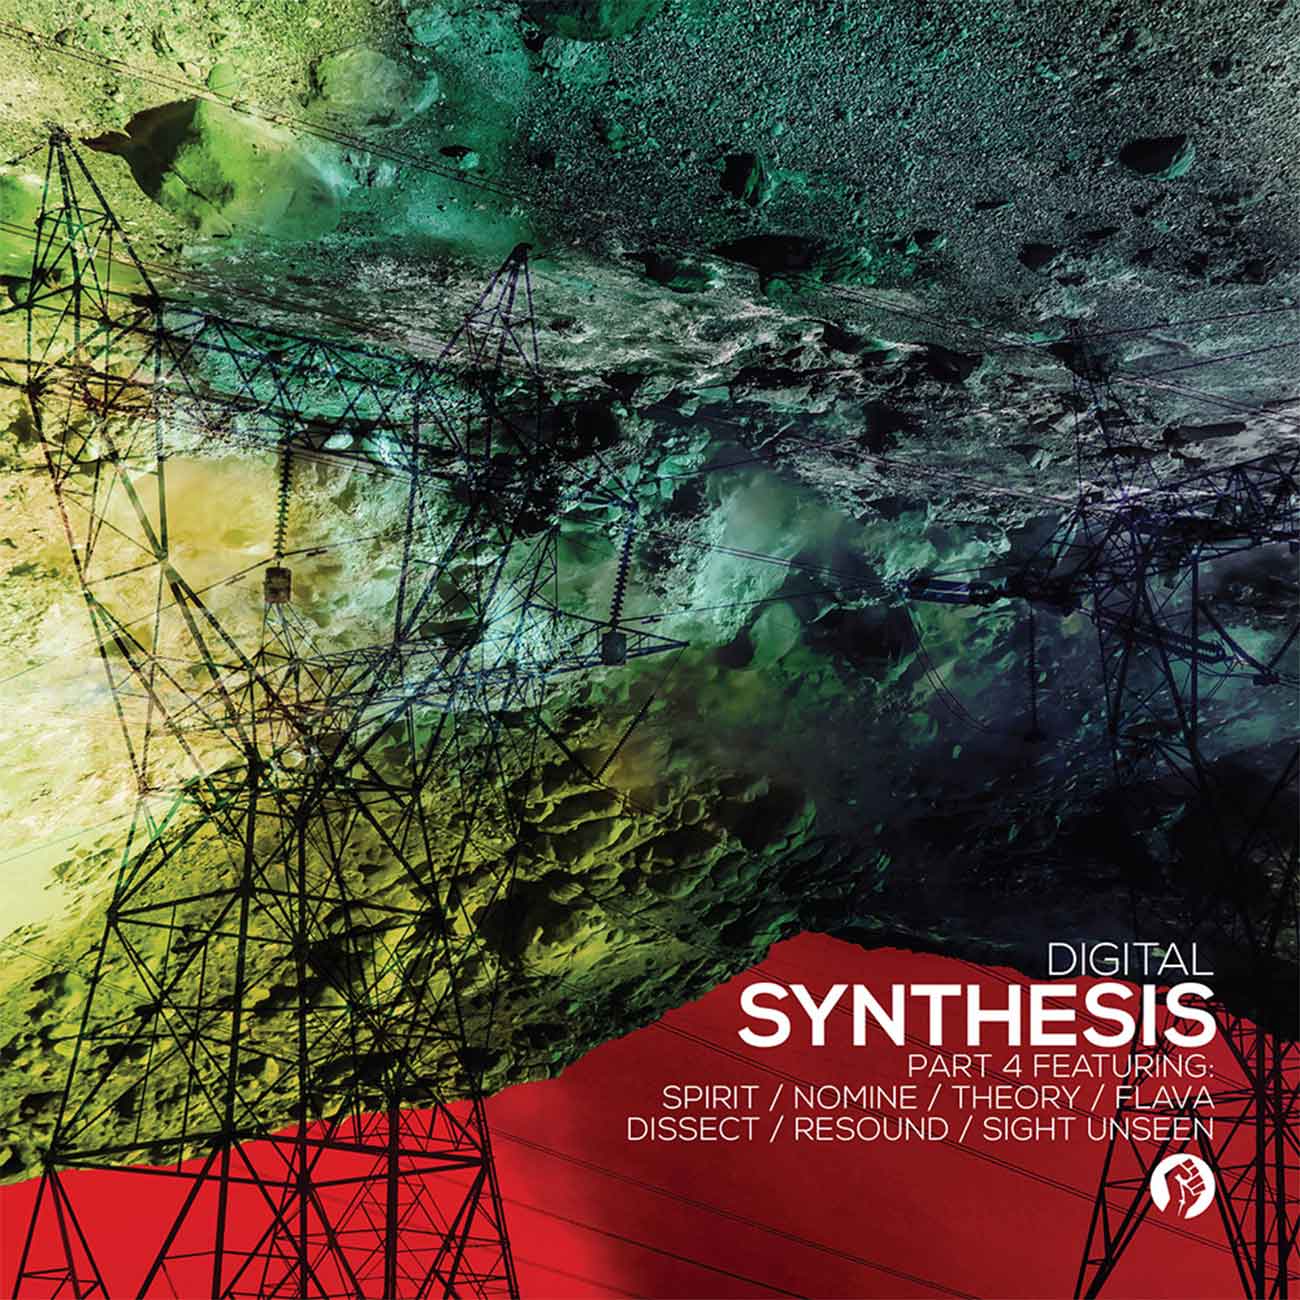 Digital - 'Synthesis' Album Part 4 - April 2016